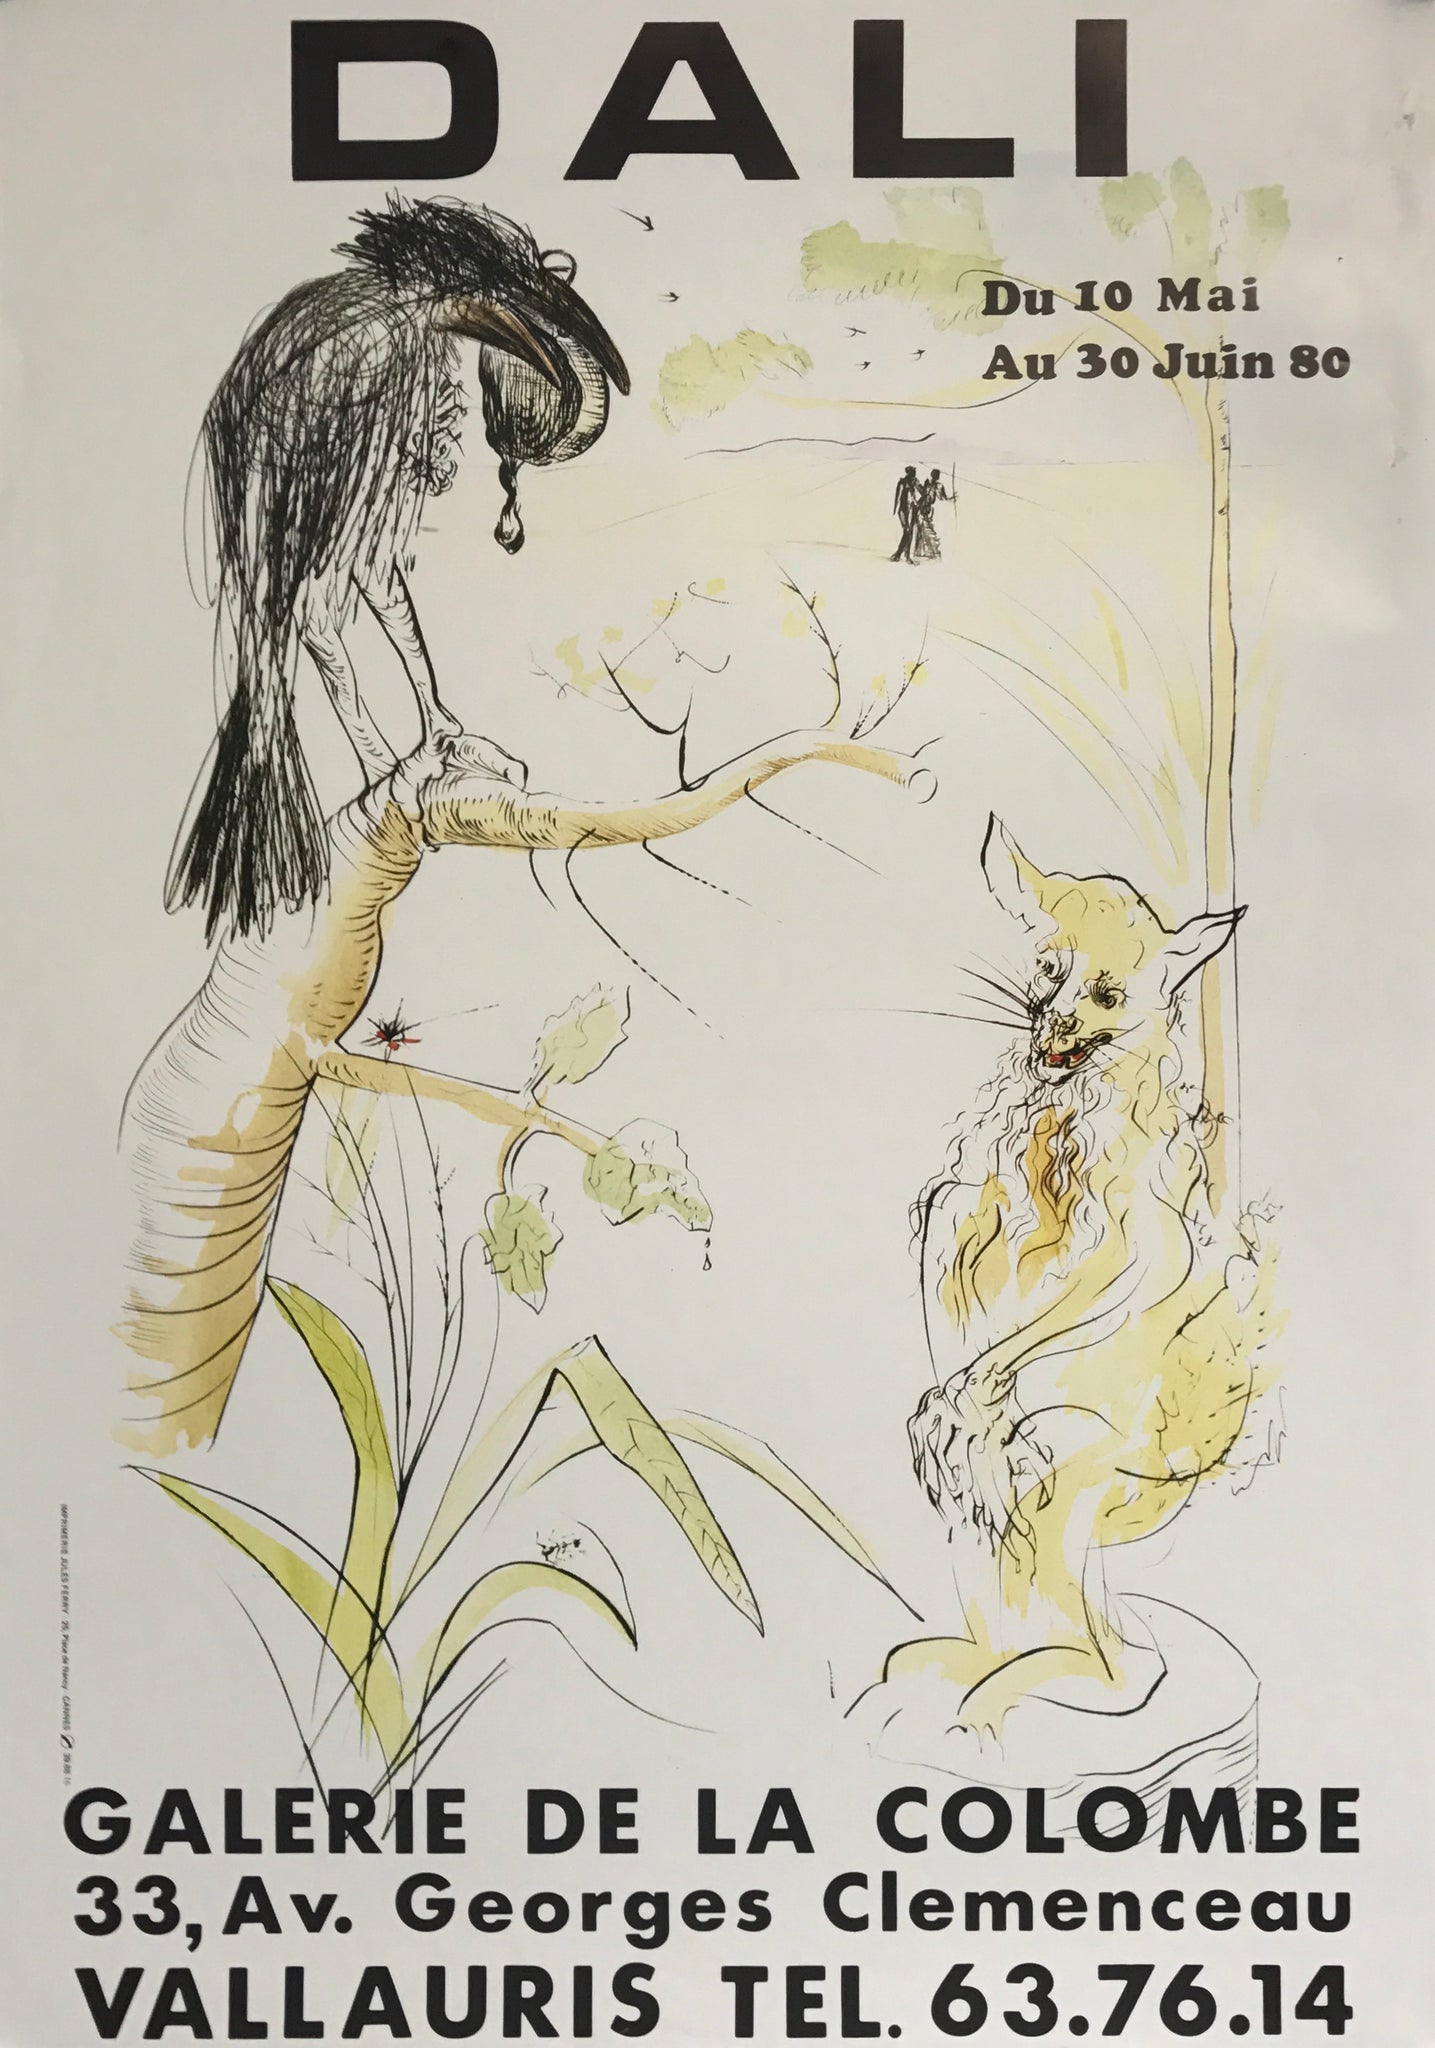 Affiche Dali - Galerie de la colombe Par Salvador Dali, 1980    Exposition sur l'artiste à la célèbre moustache à la Galerie De la colombe,  du 10 mai au 30 juin 1980 à Vallauris  Affiche représentant la fable de La Fontaine, "Le Corbeau et le Renard"